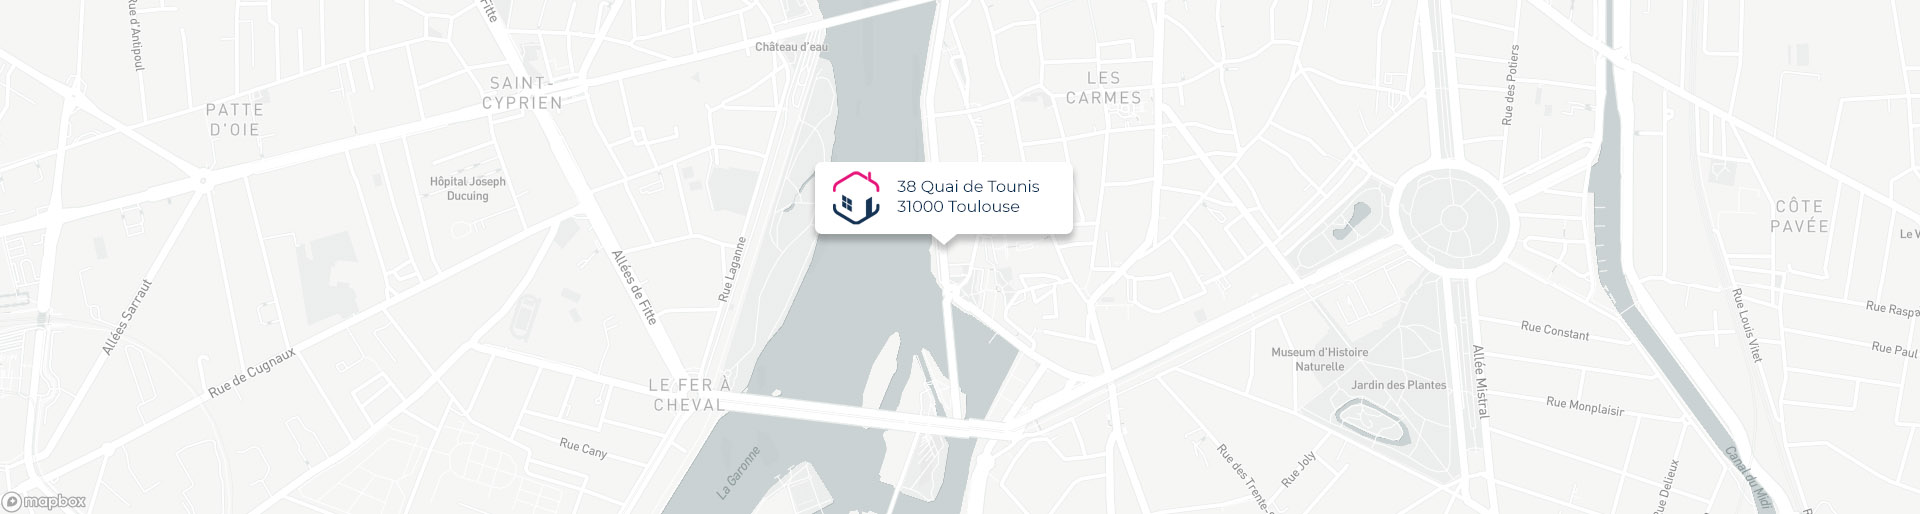 Plan de l'agence de Toulouse IMMO9 située 38, Quai de Tounis 31000 Toulouse tel: 05 61 21 79 49